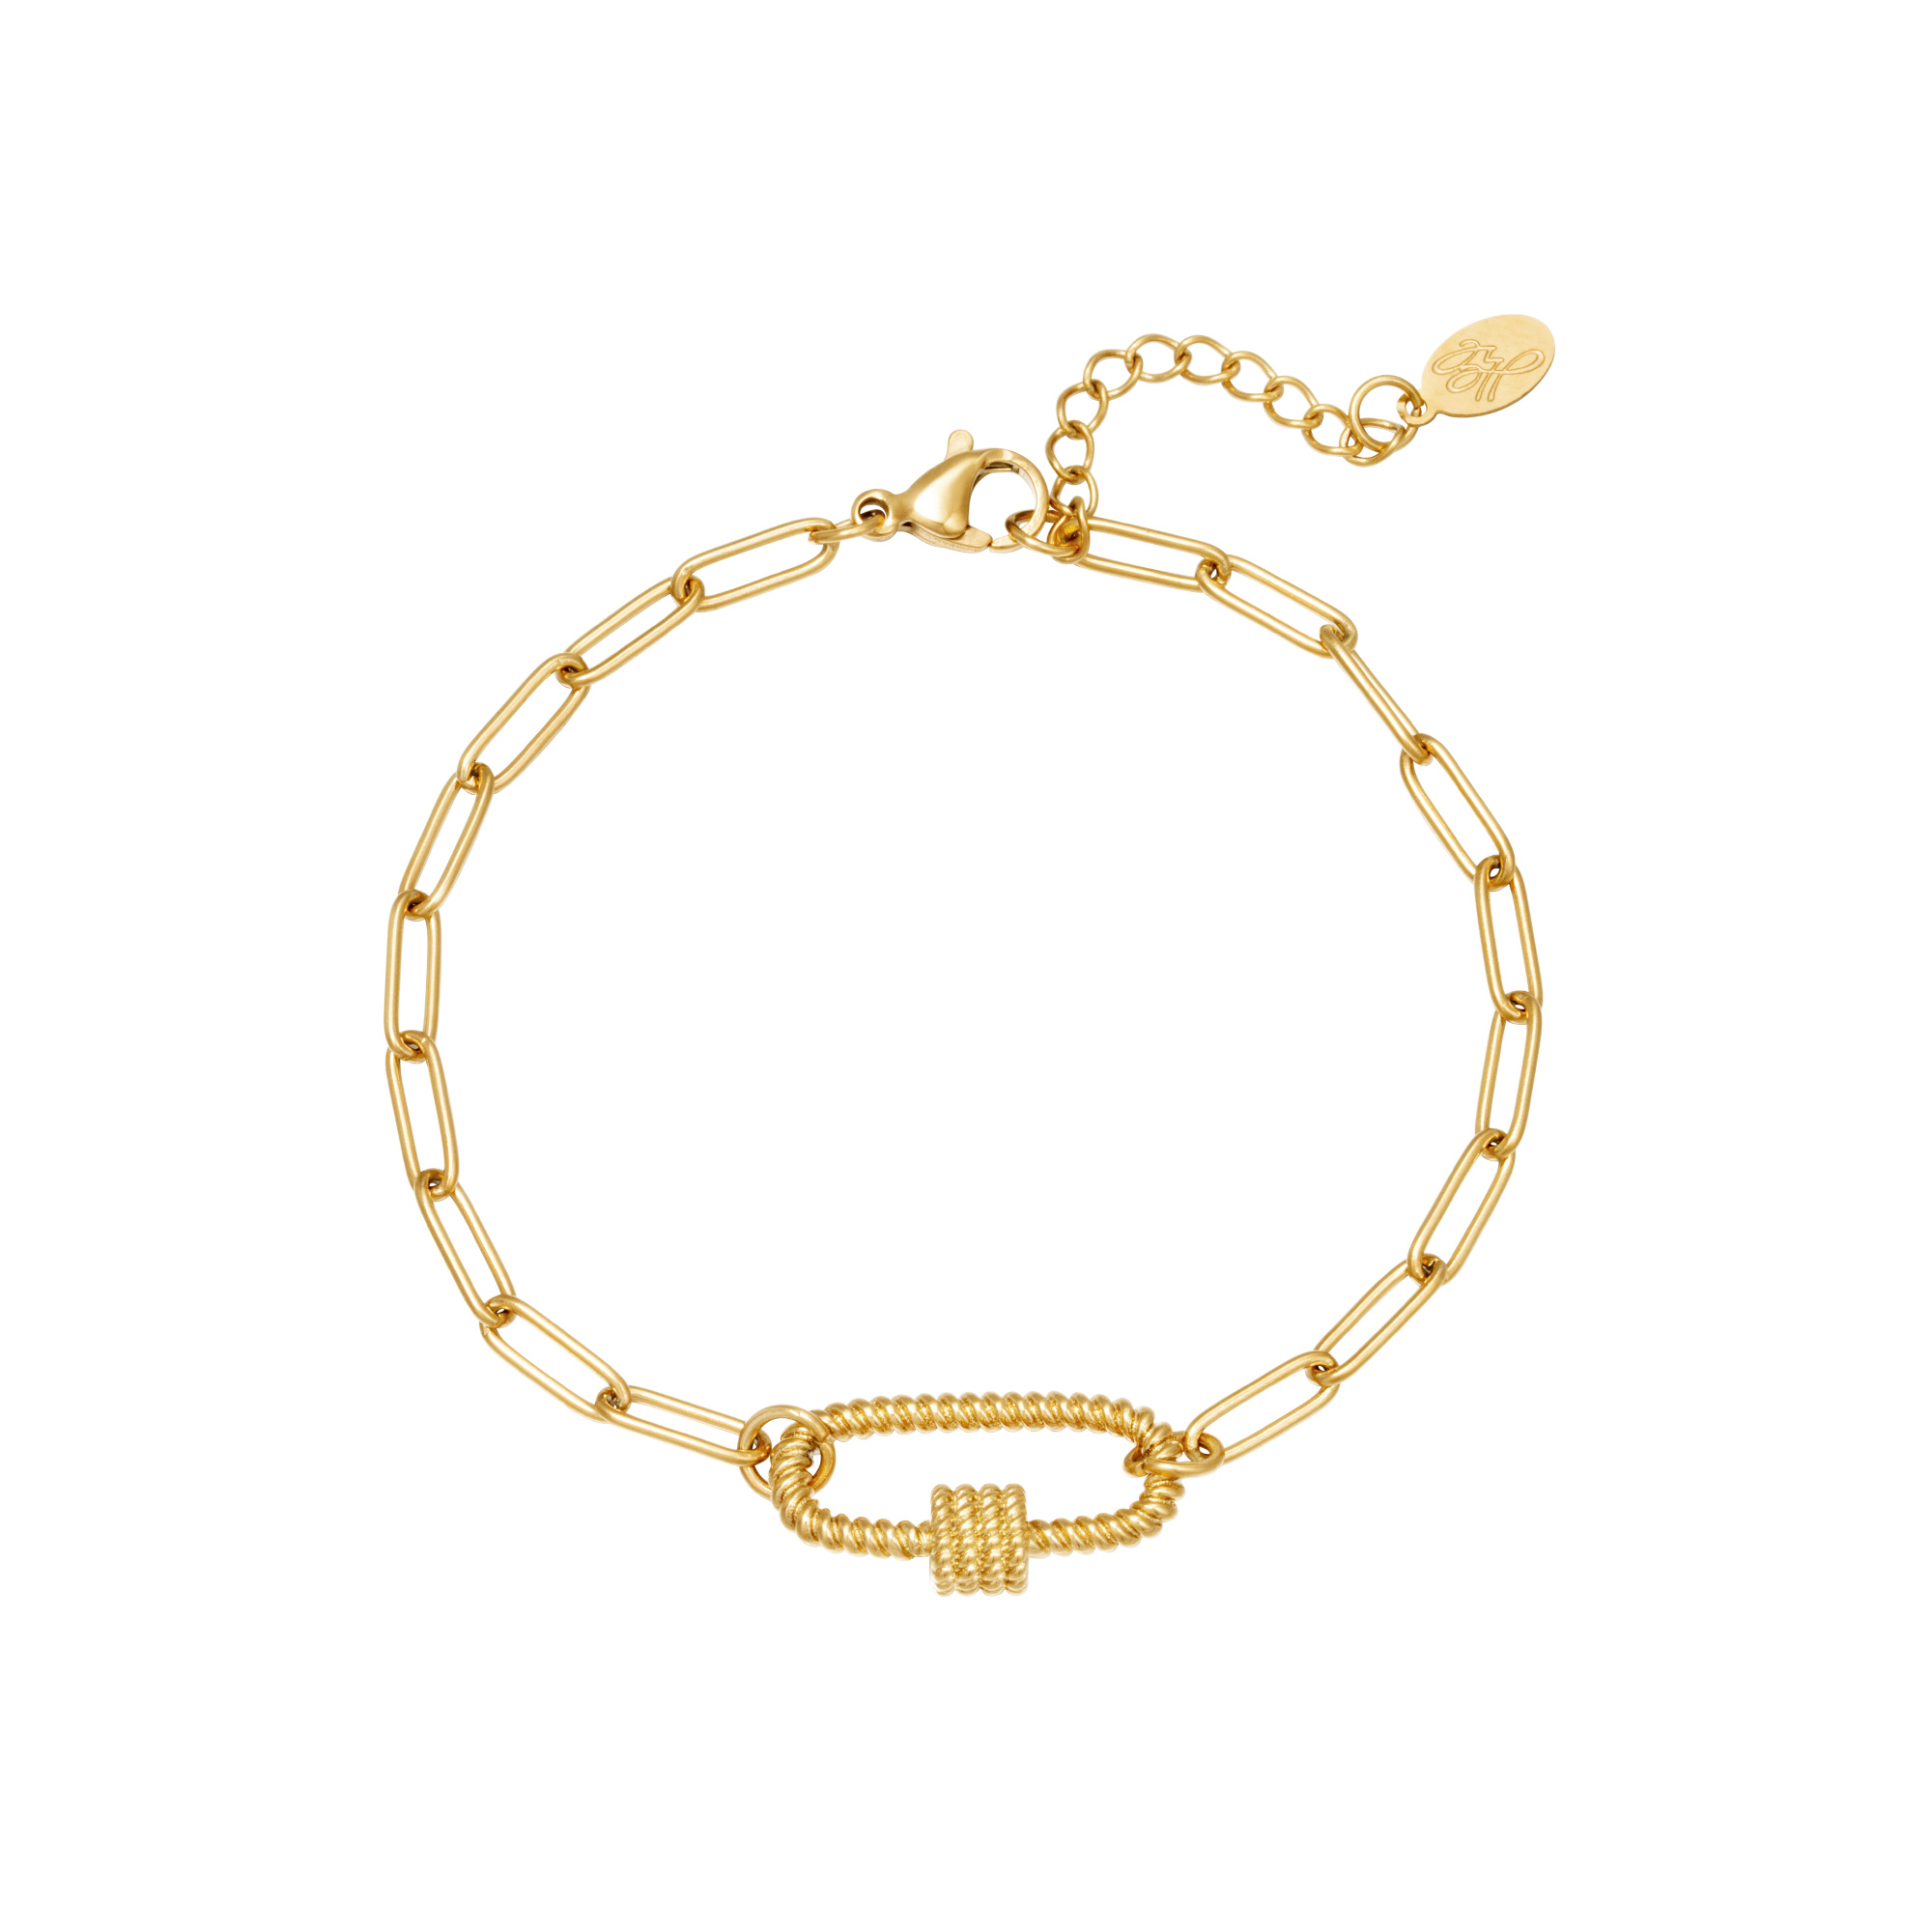 Schakelarmband Twist goud gouden armbanden bracelet yehwang sieraden kopen bestellen